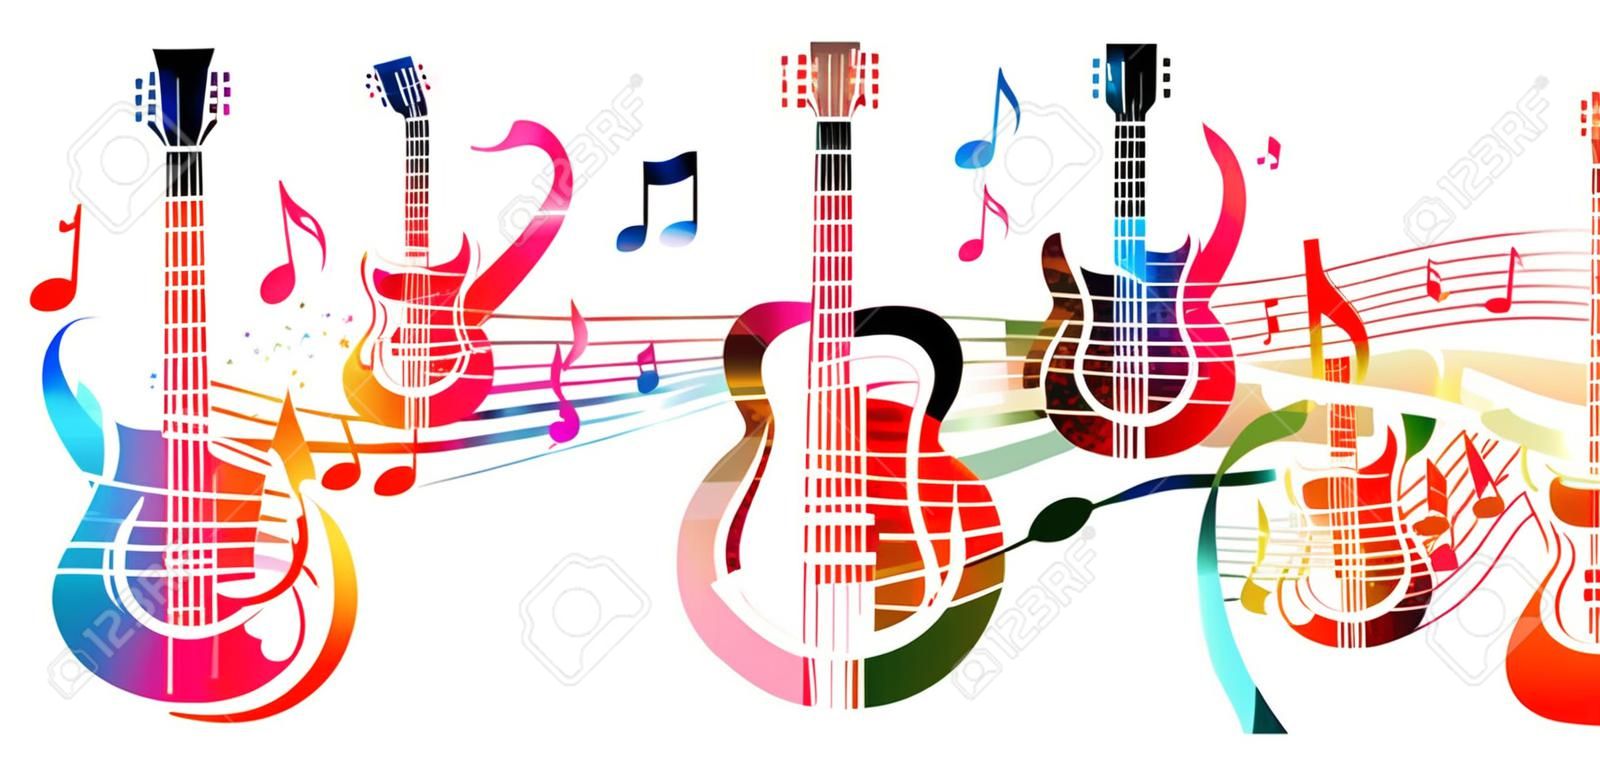 Творческий стиль музыки шаблон векторные иллюстрации, красочные гитары с музыкальным персоналом и нотами, фоном музыкальных инструментов. Дизайн для плаката, брошюры, баннер, концерт, фестиваль и музыкальный магазин